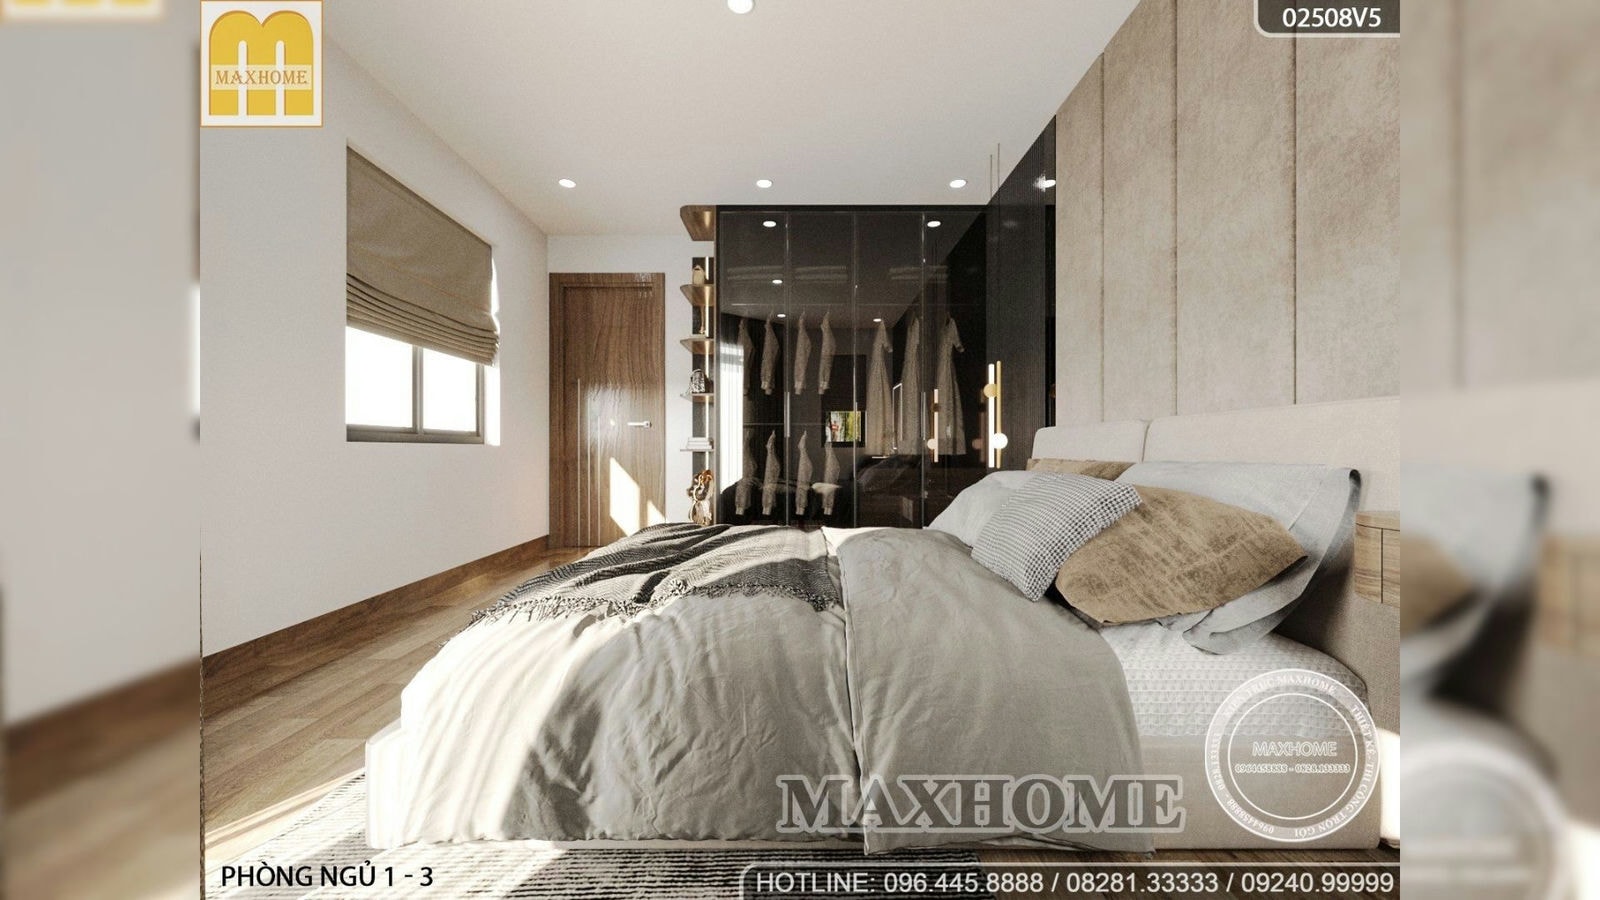 Thiết kế nội thất đẹp cho nhà lô góc 5 tầng ở TP Hồ Chí Minh | MH02159